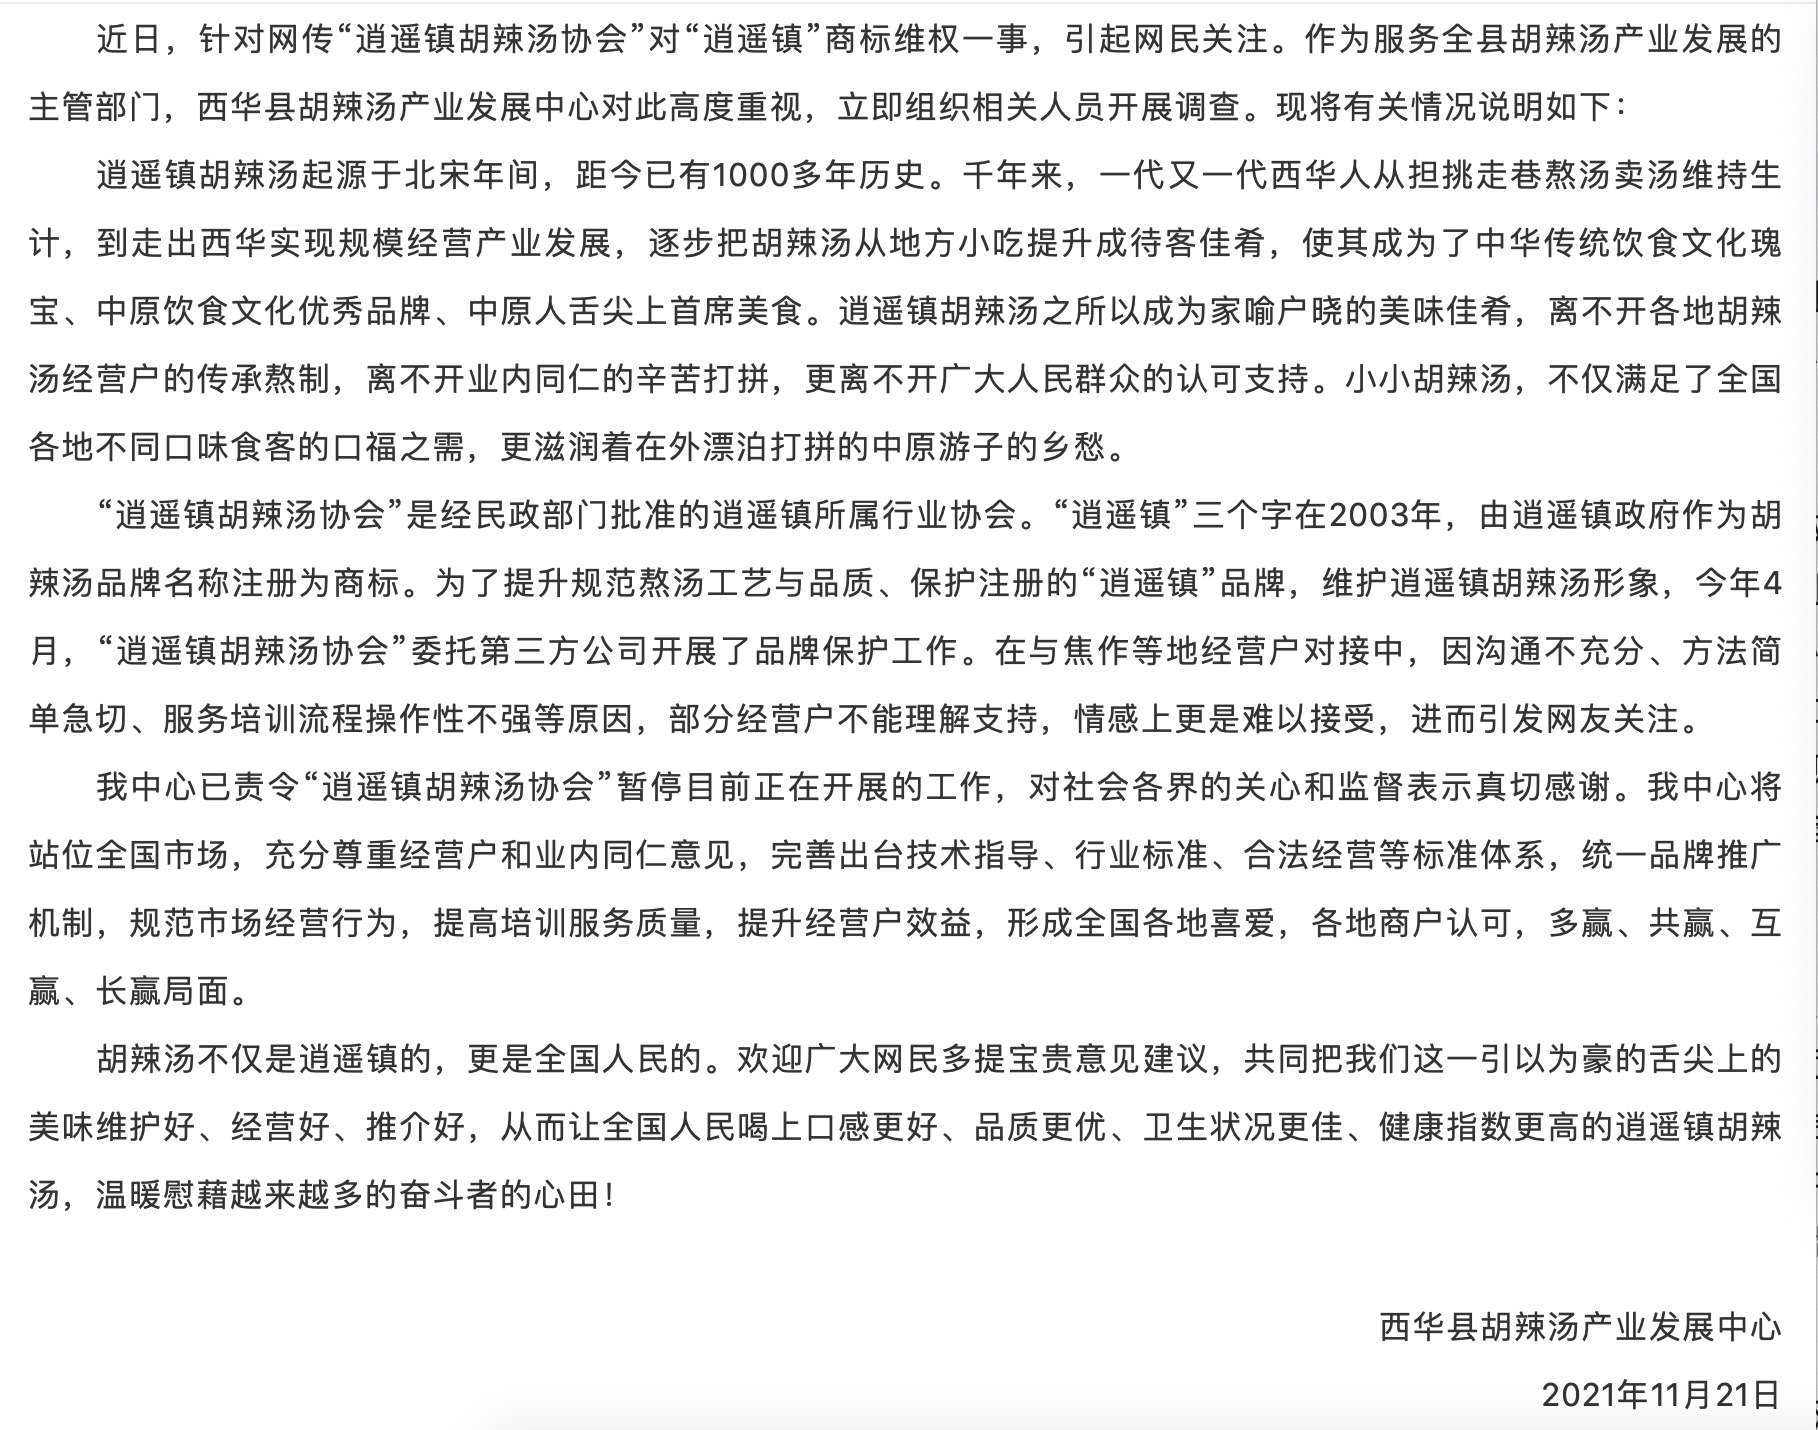 西华县胡辣汤产业发展中心的通报 来源：西华县融媒体中心微信公众号“西华融媒”。